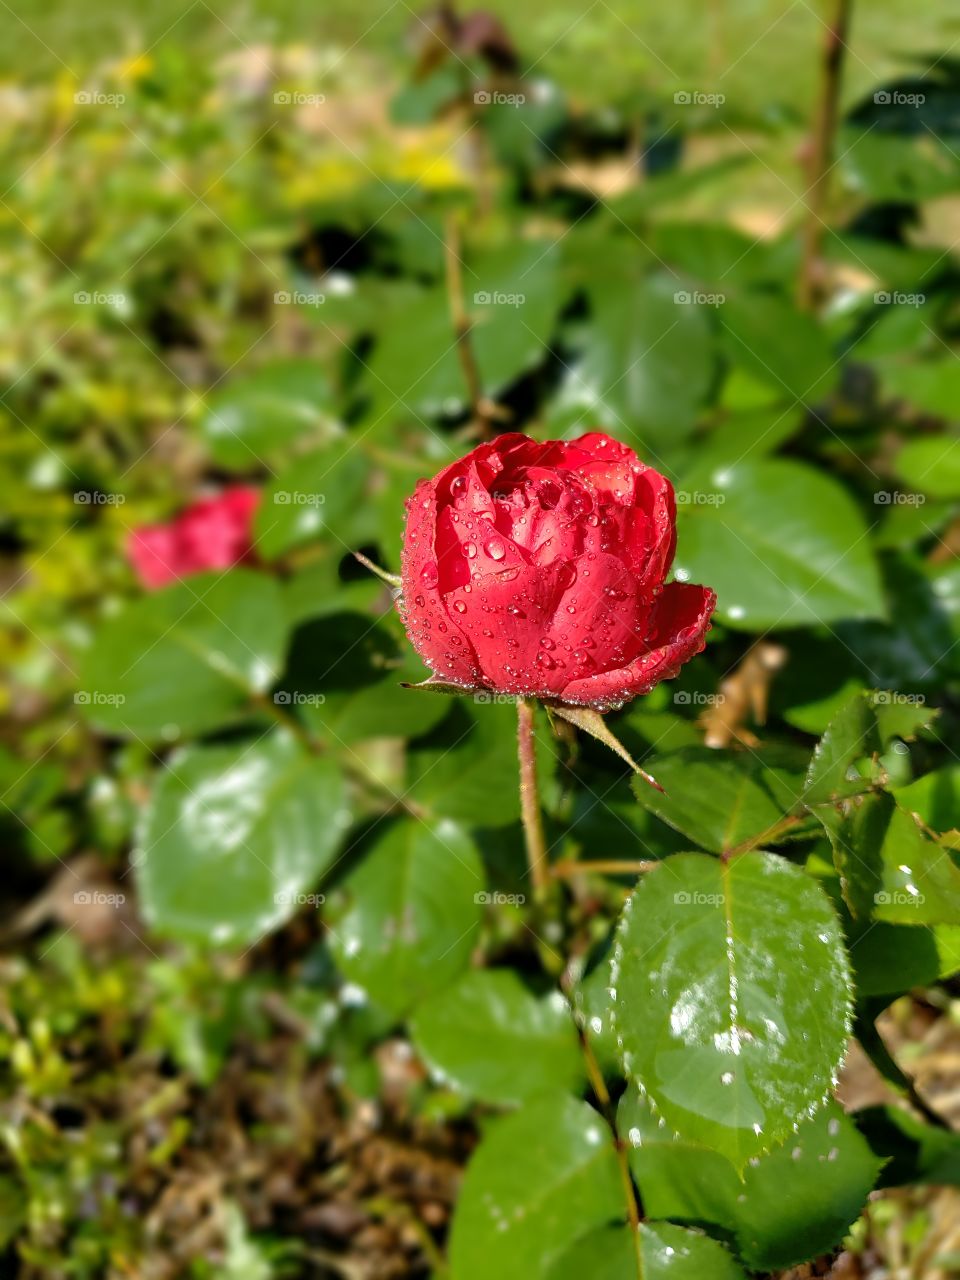 Freshly watered rose bloom